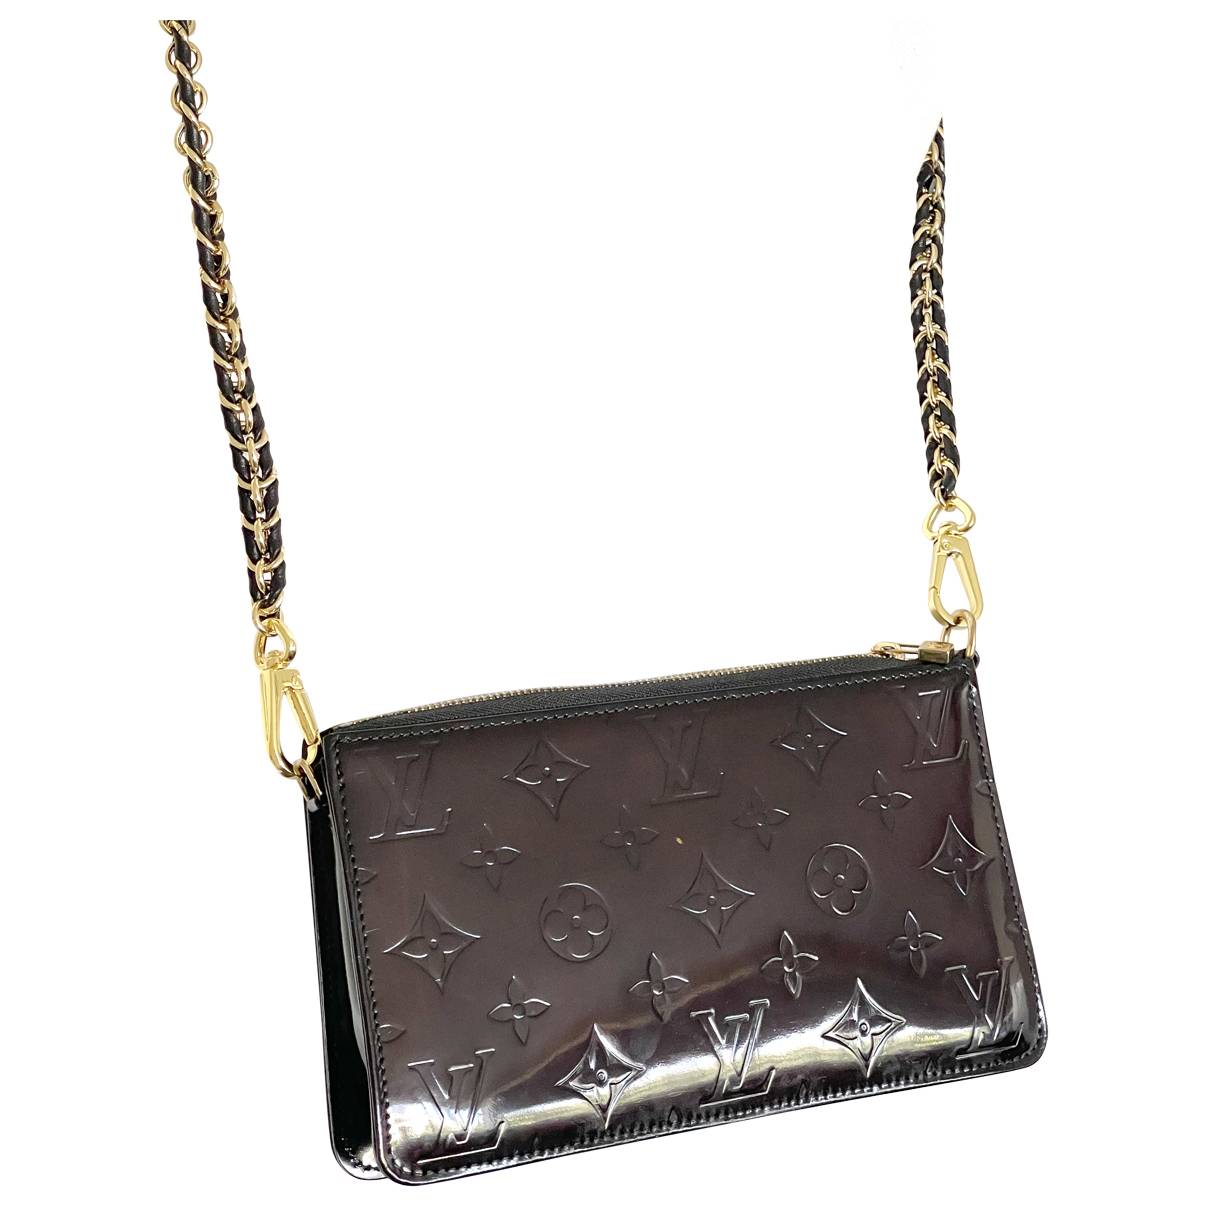 Lexington patent leather mini bag